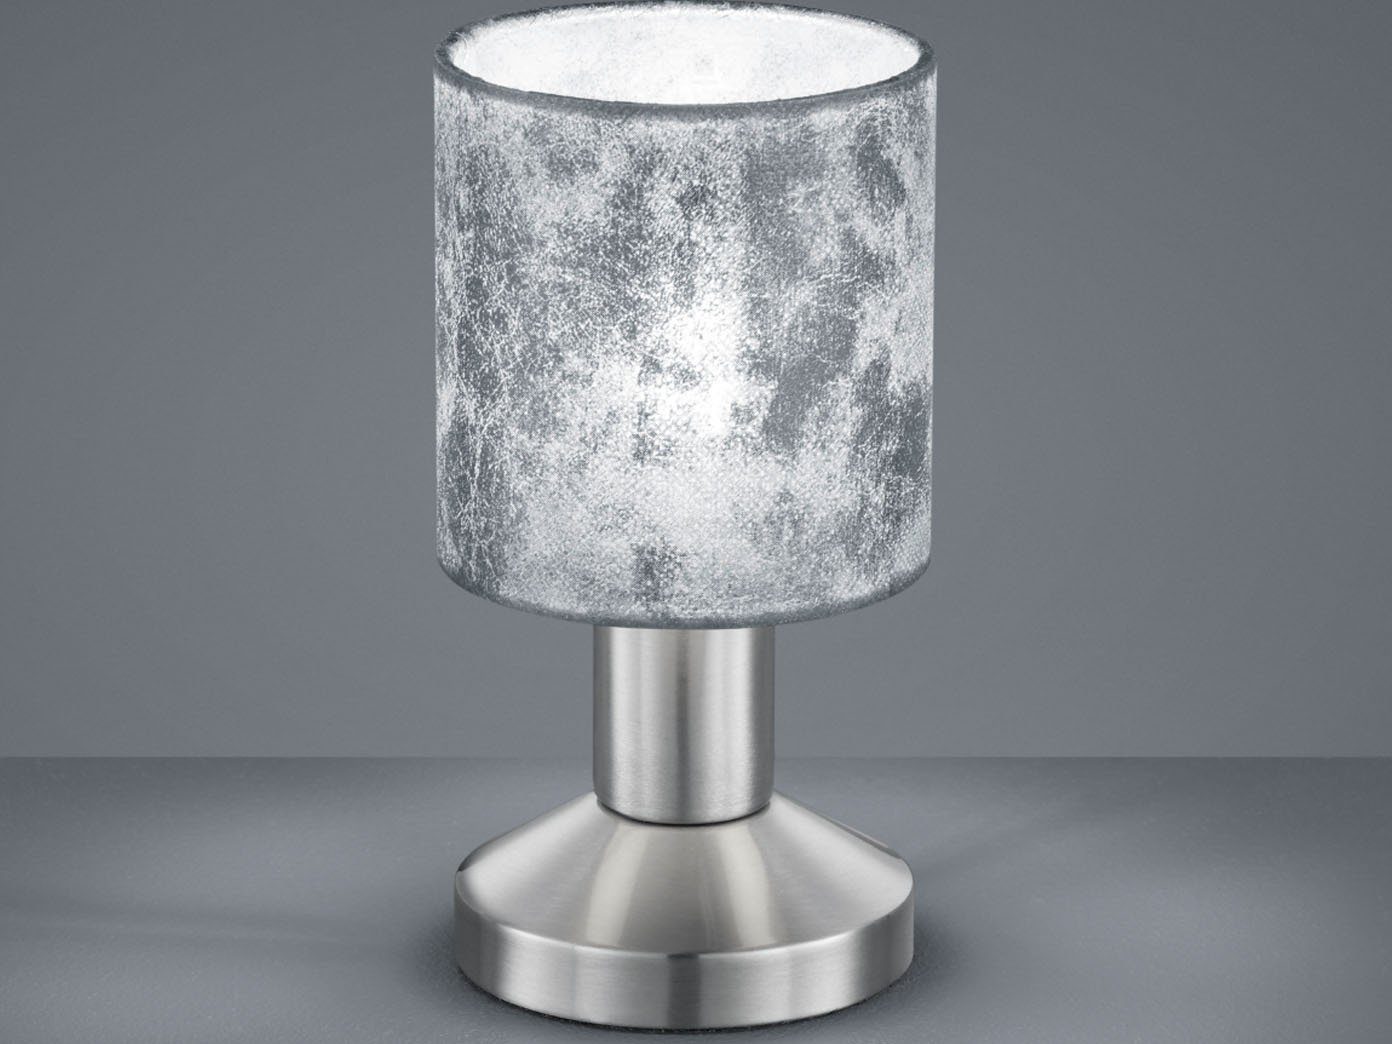 Textil Nacht Tisch Leuchte Schlaf Zimmer Keramik Lese Lampe grau weiß marmoriert 